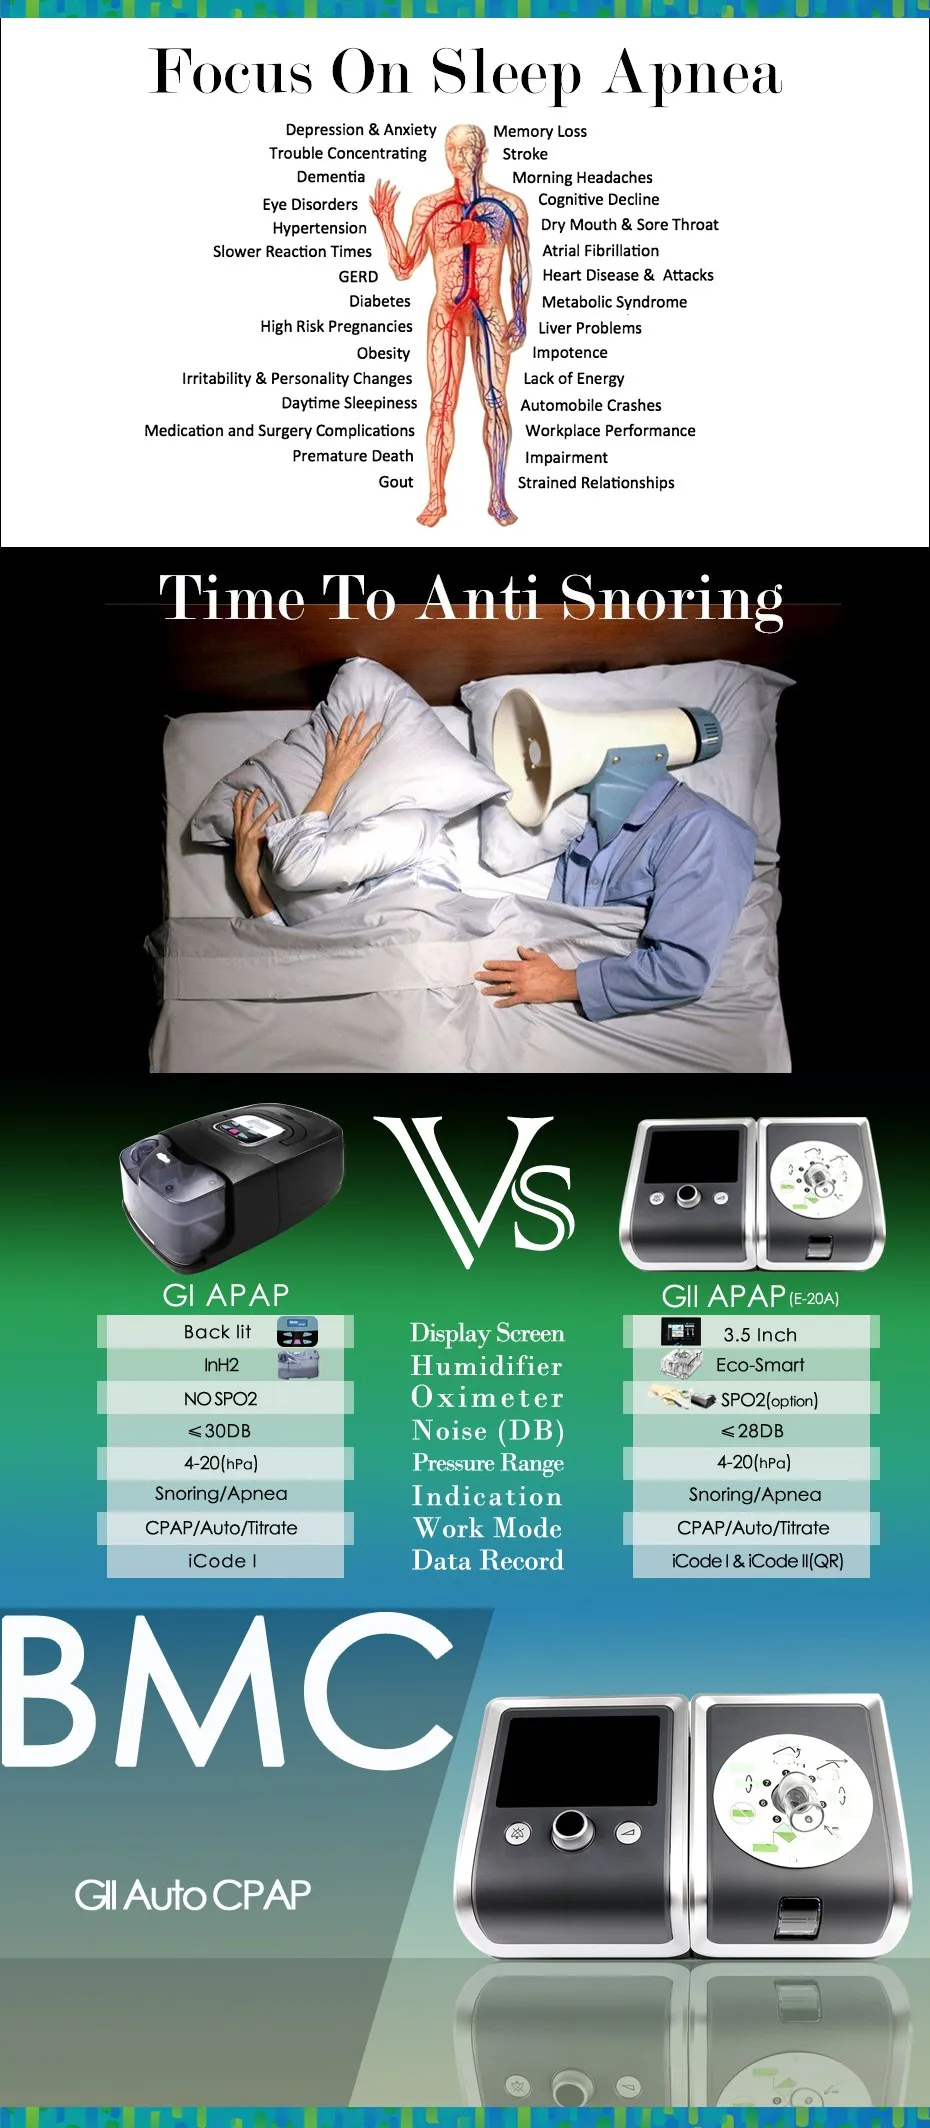 Doctodd GII APAP Высокое качество авто CPAP дыхательное устройство храп терапия Анти Храп апноэ сна OSAS APAP с бесплатными частями